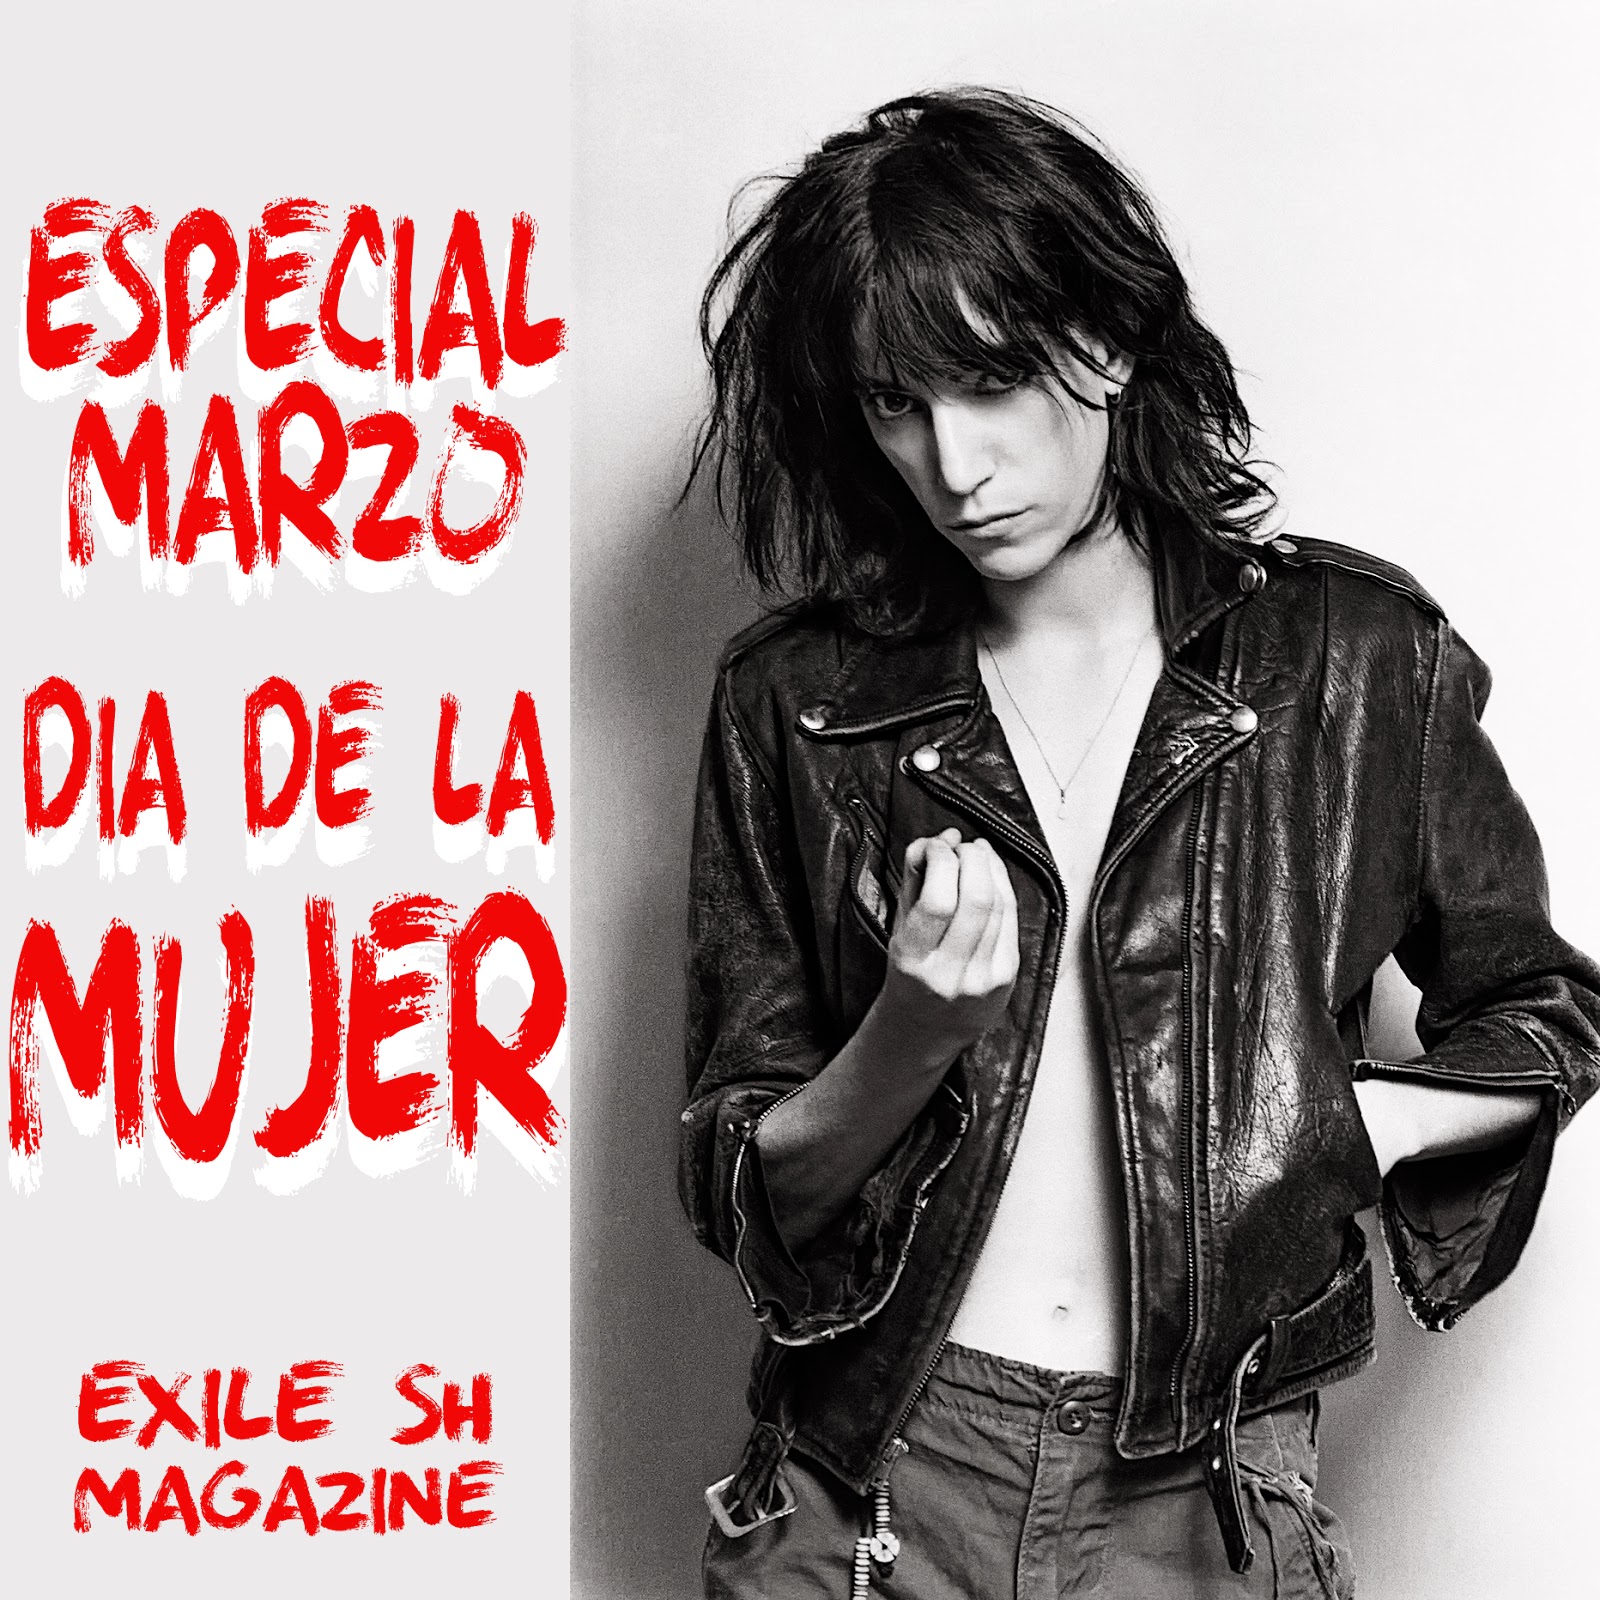 http://www.exileshmagazine.com/2014/03/especial-marzo-los-50-mejores-discos.html